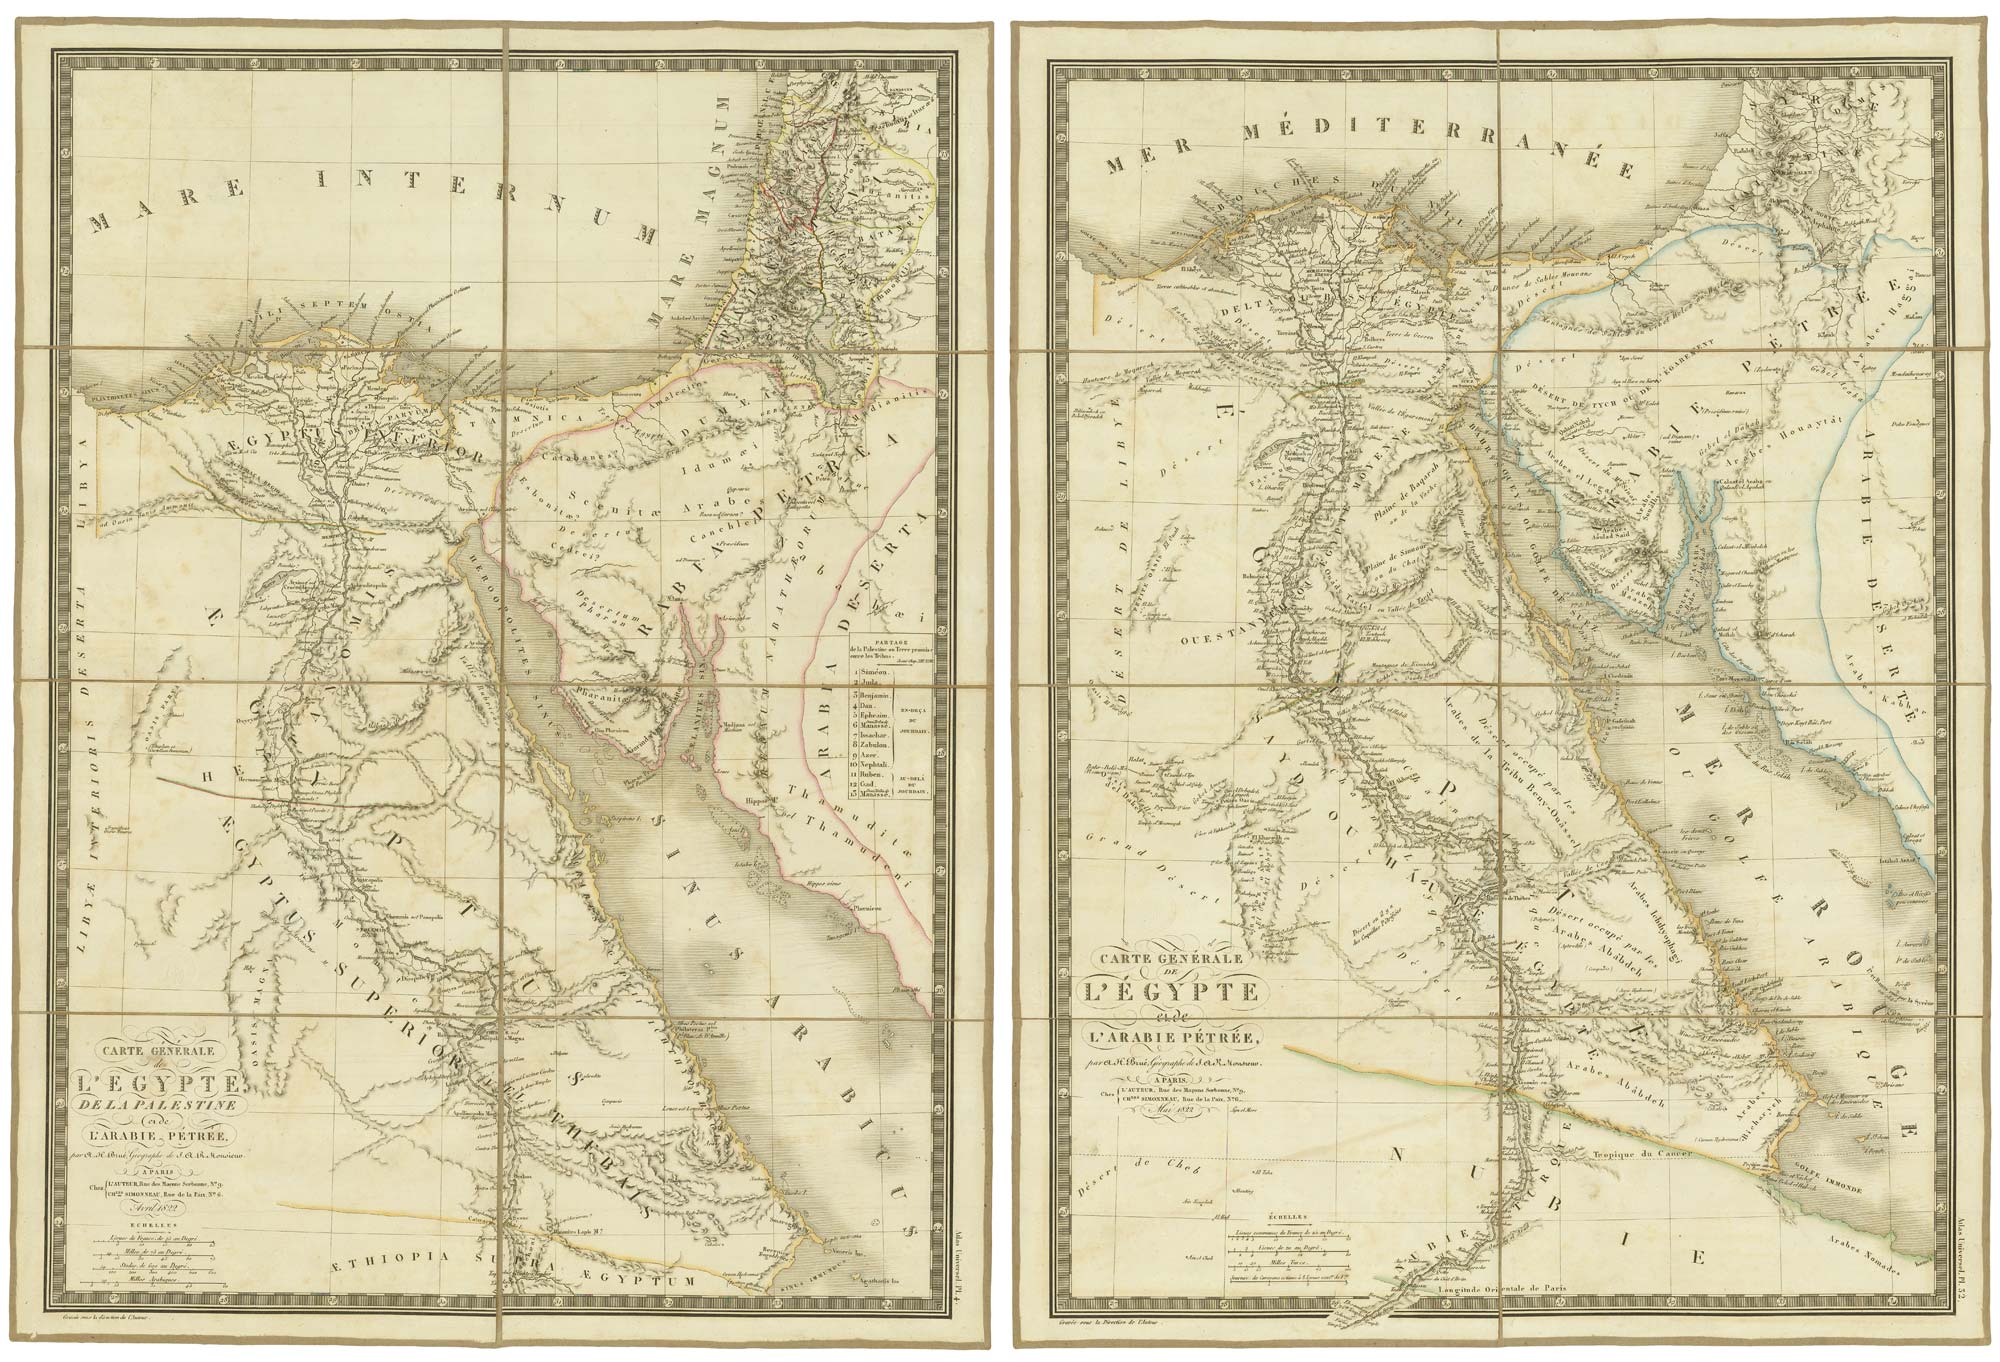 Carte Gnral de L'Egypt, de la Palestine et de L'Arabie Ptre. [together with] Carte Gnral de L'gypt et de L'Arabie Ptre.